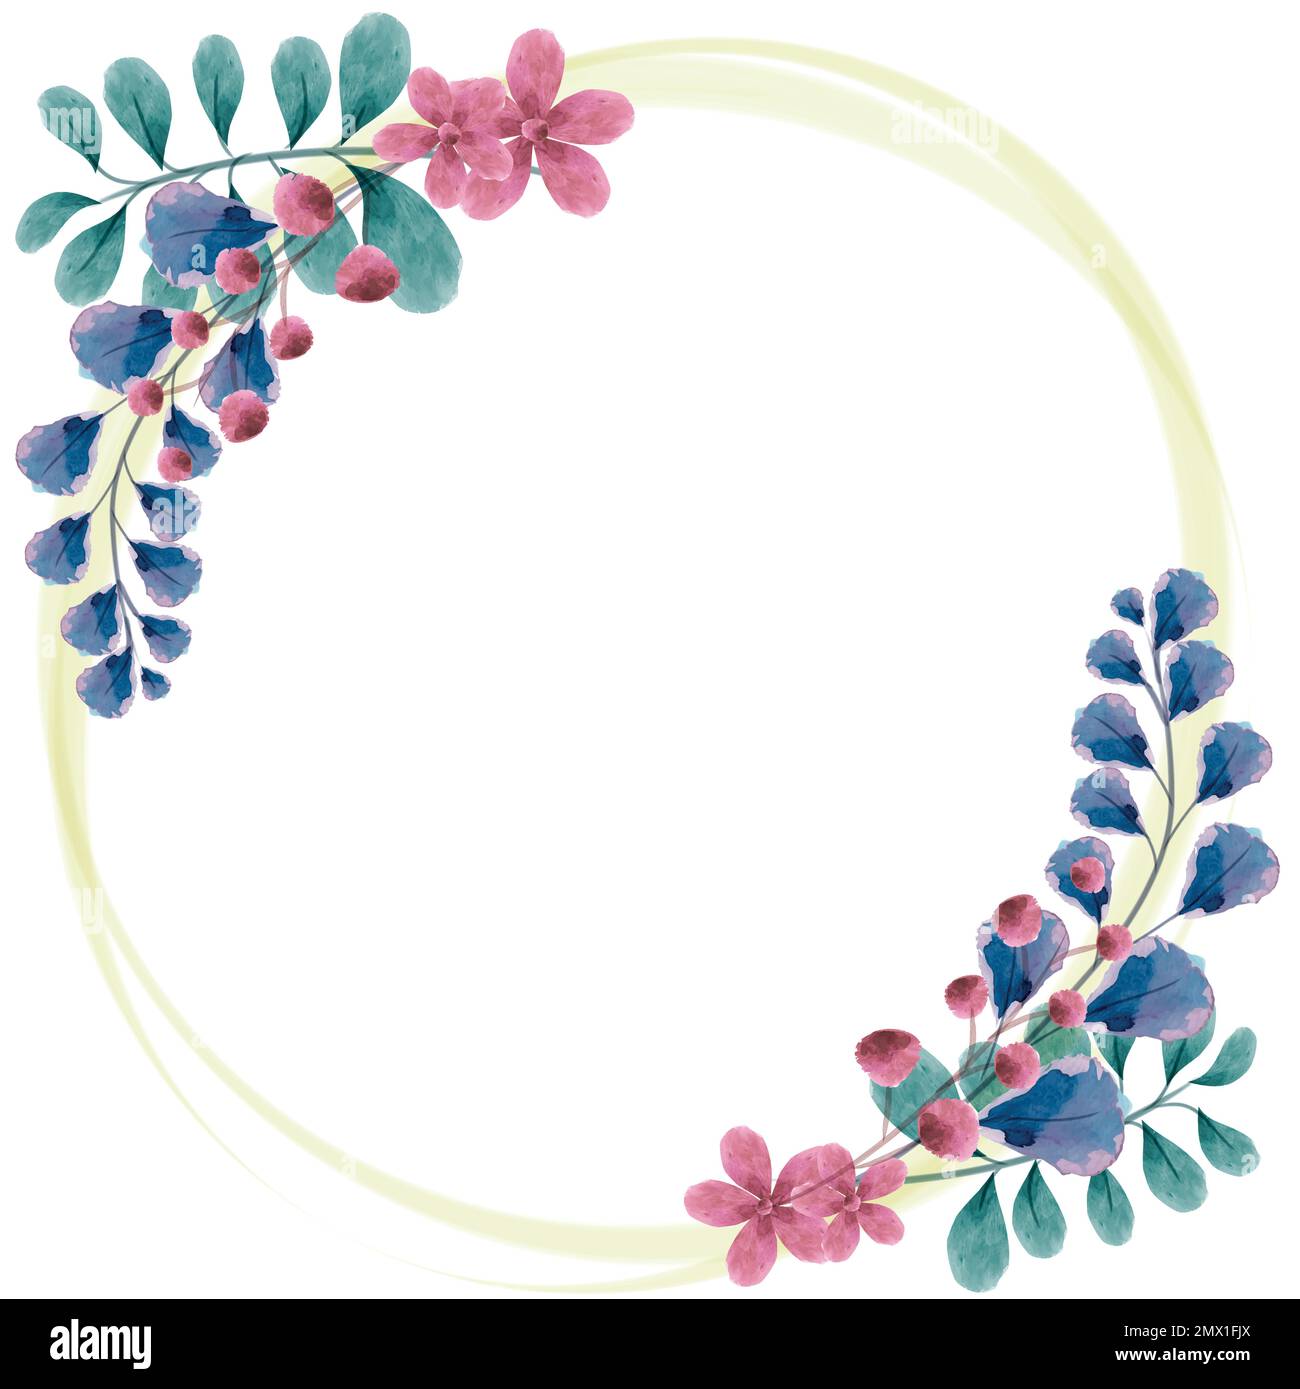 Cadre circulaire élégant avec fleurs peintes en aquarelle pour inclure des textes, des messages et de belles phrases pour les mariages Illustration de Vecteur